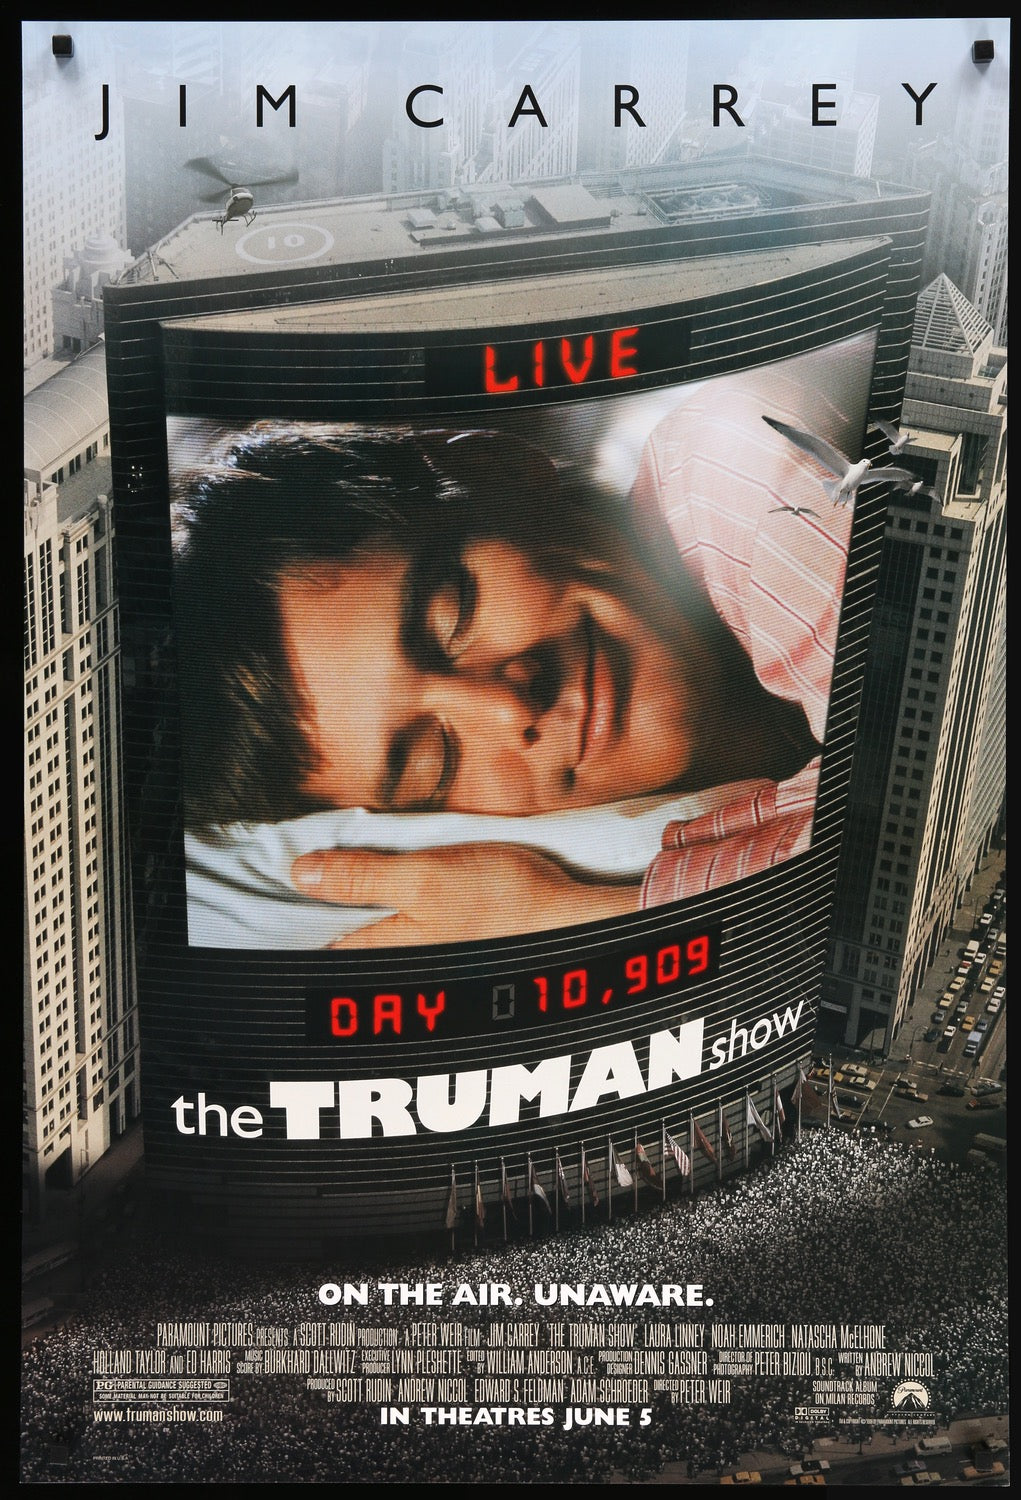 Truman Show (1998) original movie poster for sale at Original Film Art